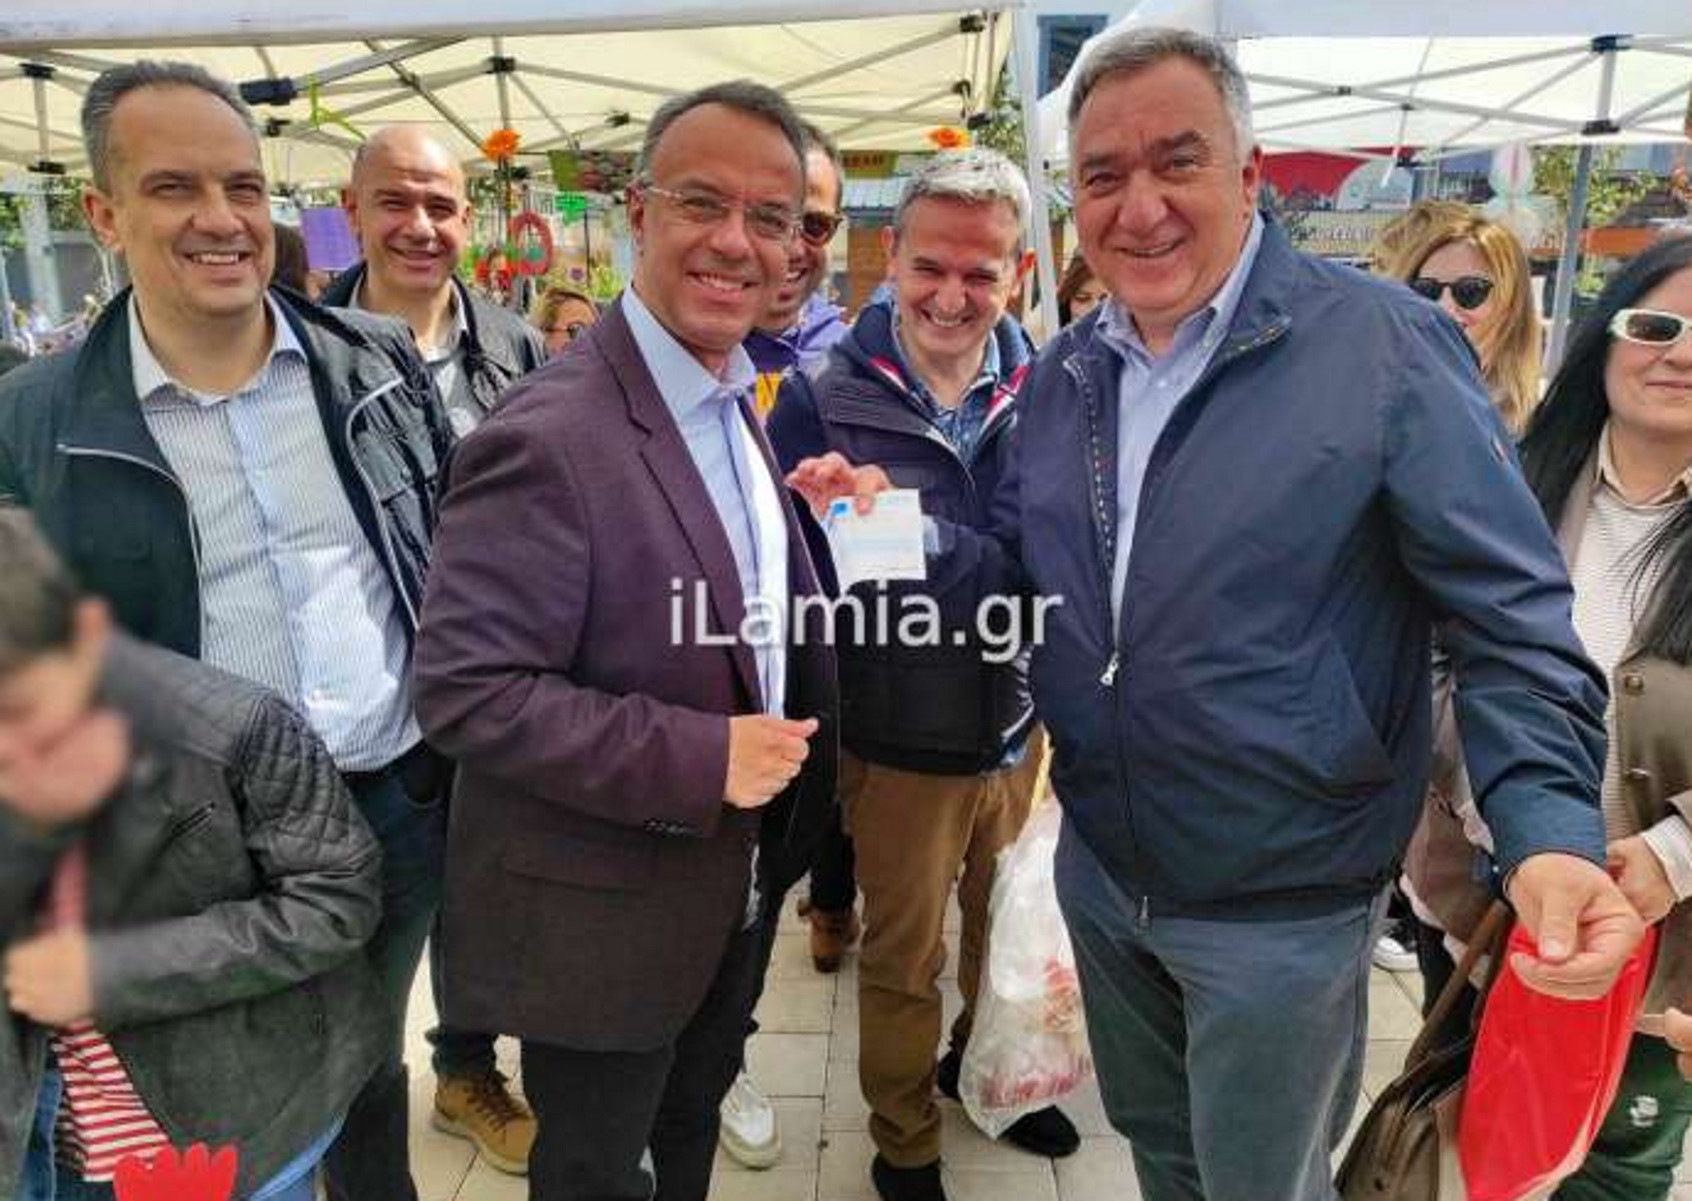 Σταϊκούρας σε δήμαρχο Λαμίας: «Πήρατε απόδειξη κύριε;» – Η απάντηση, η φωτογραφία και τα χαμόγελα